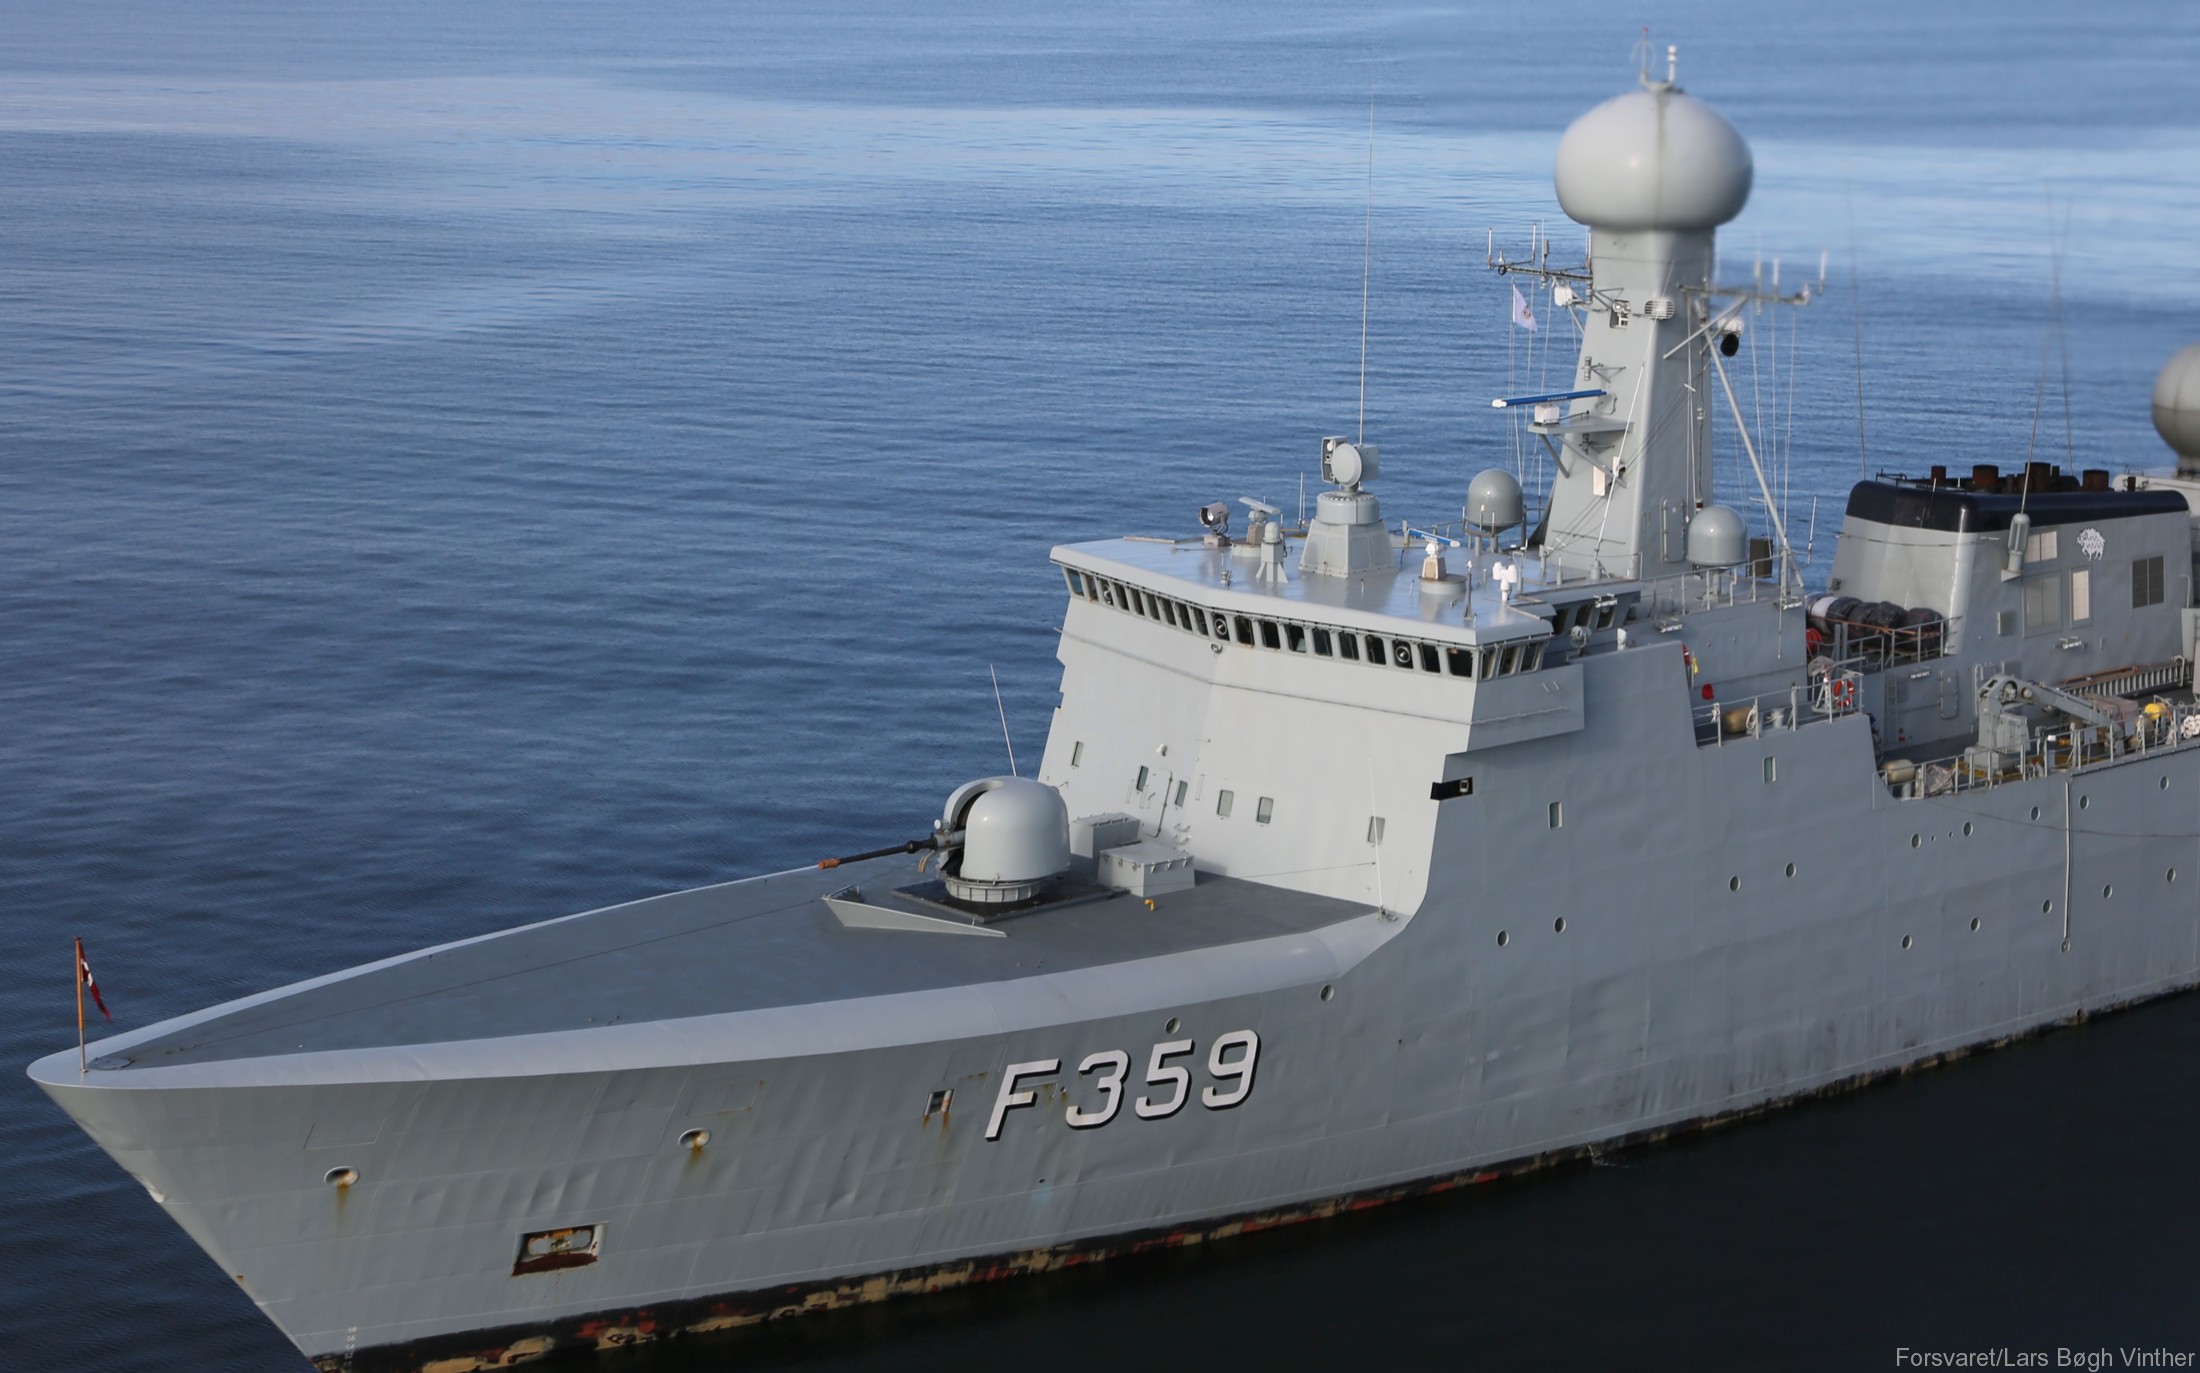 f-359 hdms vaedderen thetis class ocean patrol frigate royal danish navy kongelige danske marine kdm inspektionsskibet 06 oto melara 76/62 gun